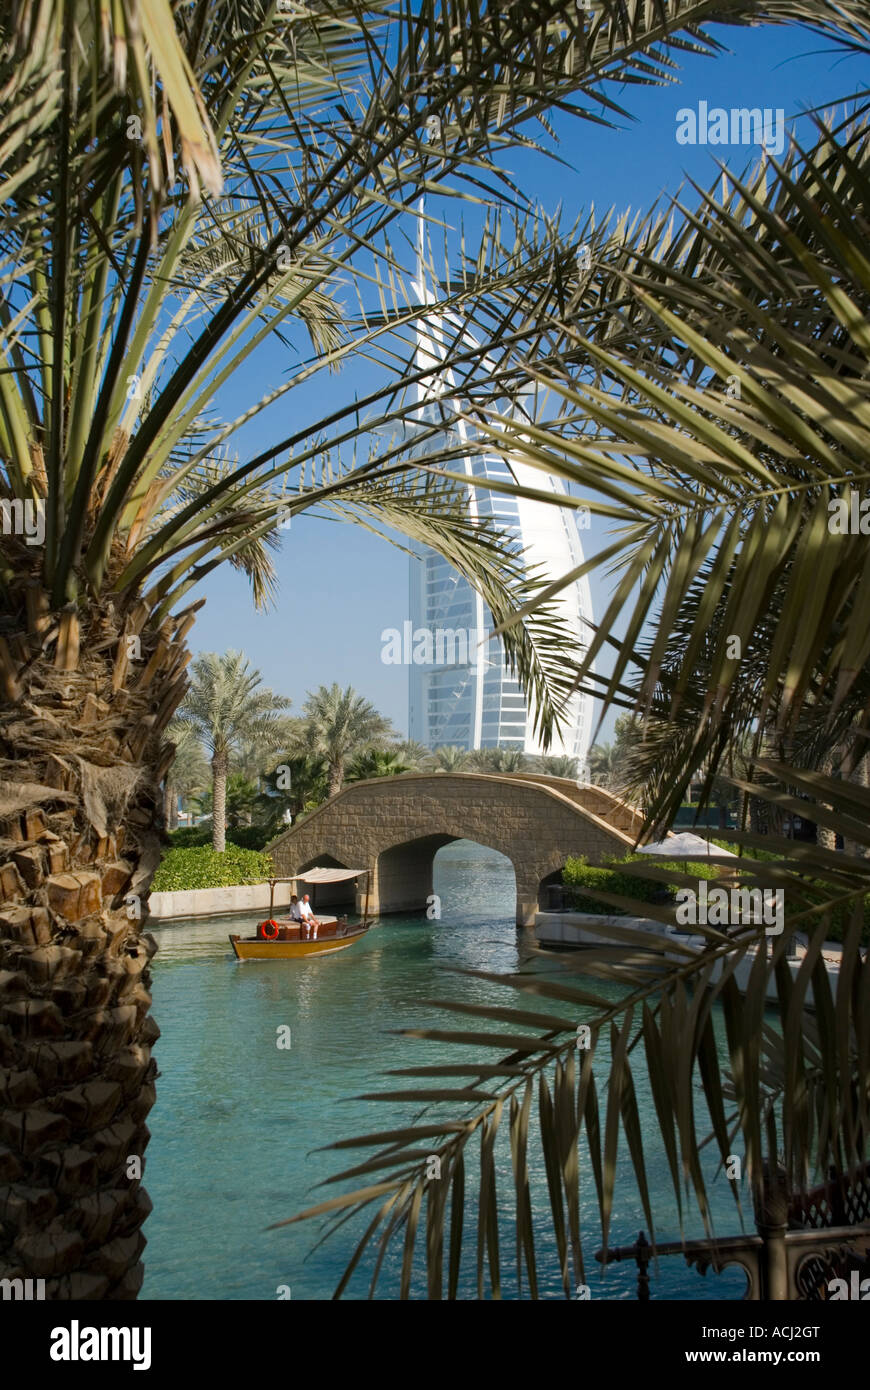 Mittlerer Osten VAE Vereinigte Arabische Emirate Dubai Burj al Arab Mina a Salam tagsüber Stockfoto